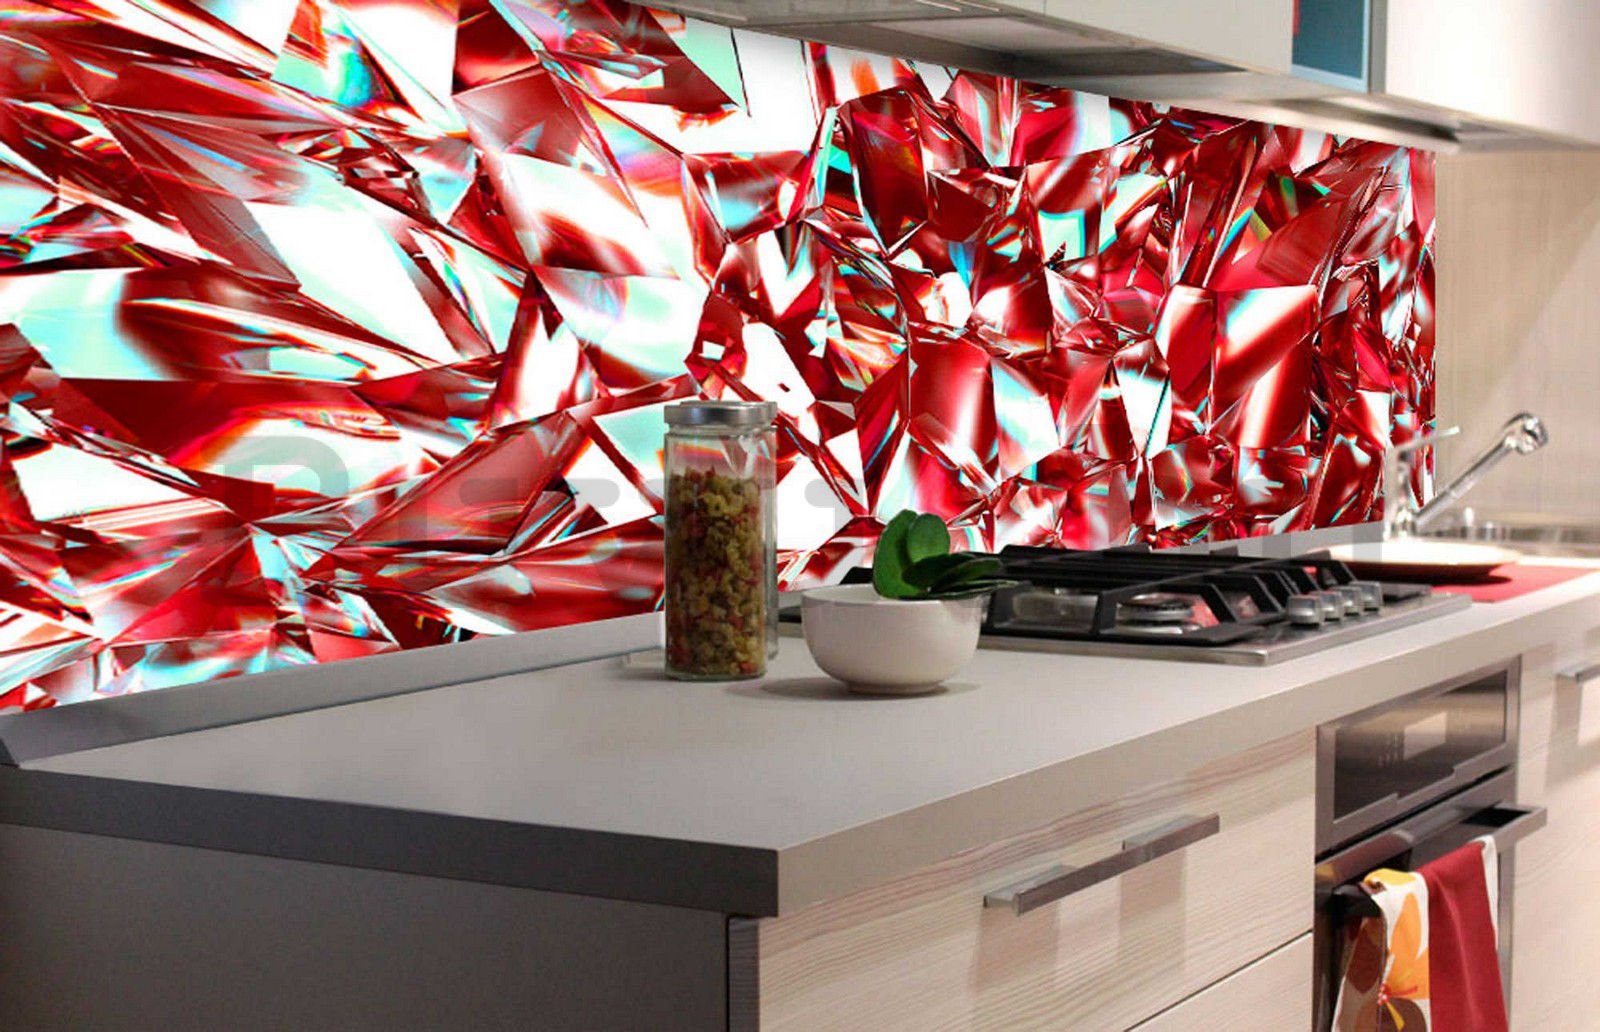 Öntapadós mosható tapéta konyhába - Vörös kristályok, 180x60 cm